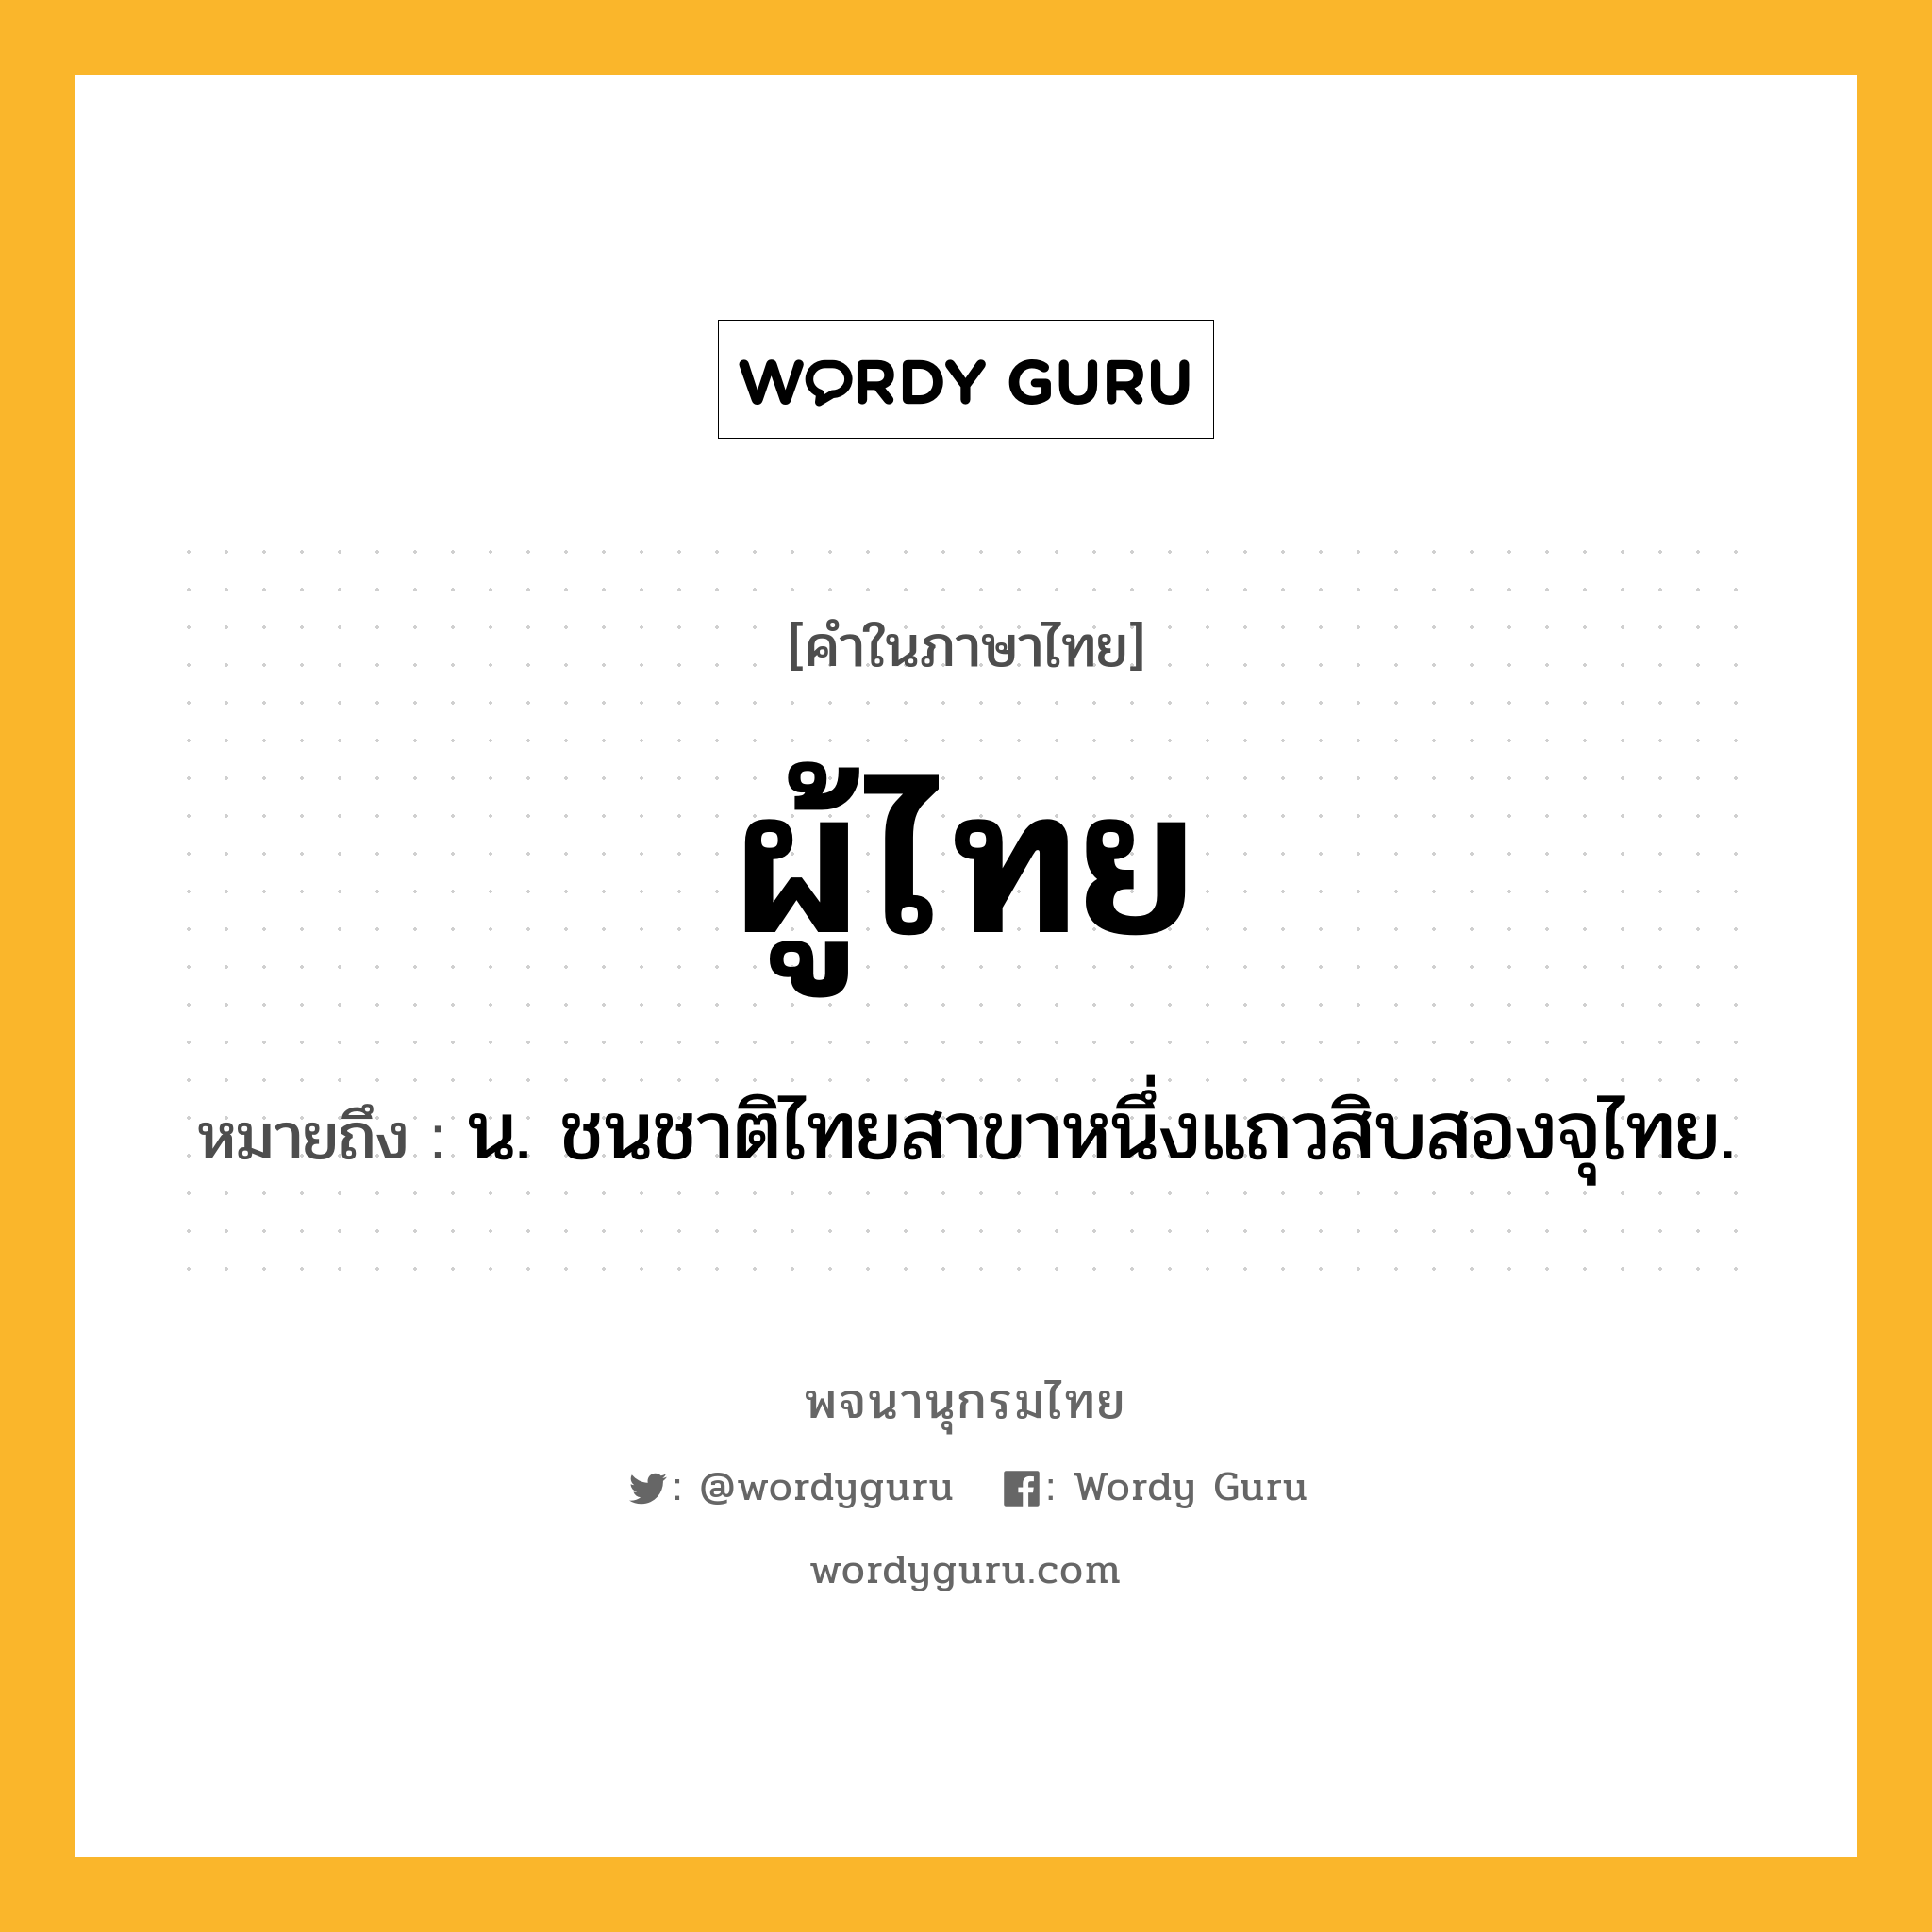 ผู้ไทย หมายถึงอะไร?, คำในภาษาไทย ผู้ไทย หมายถึง น. ชนชาติไทยสาขาหนึ่งแถวสิบสองจุไทย.